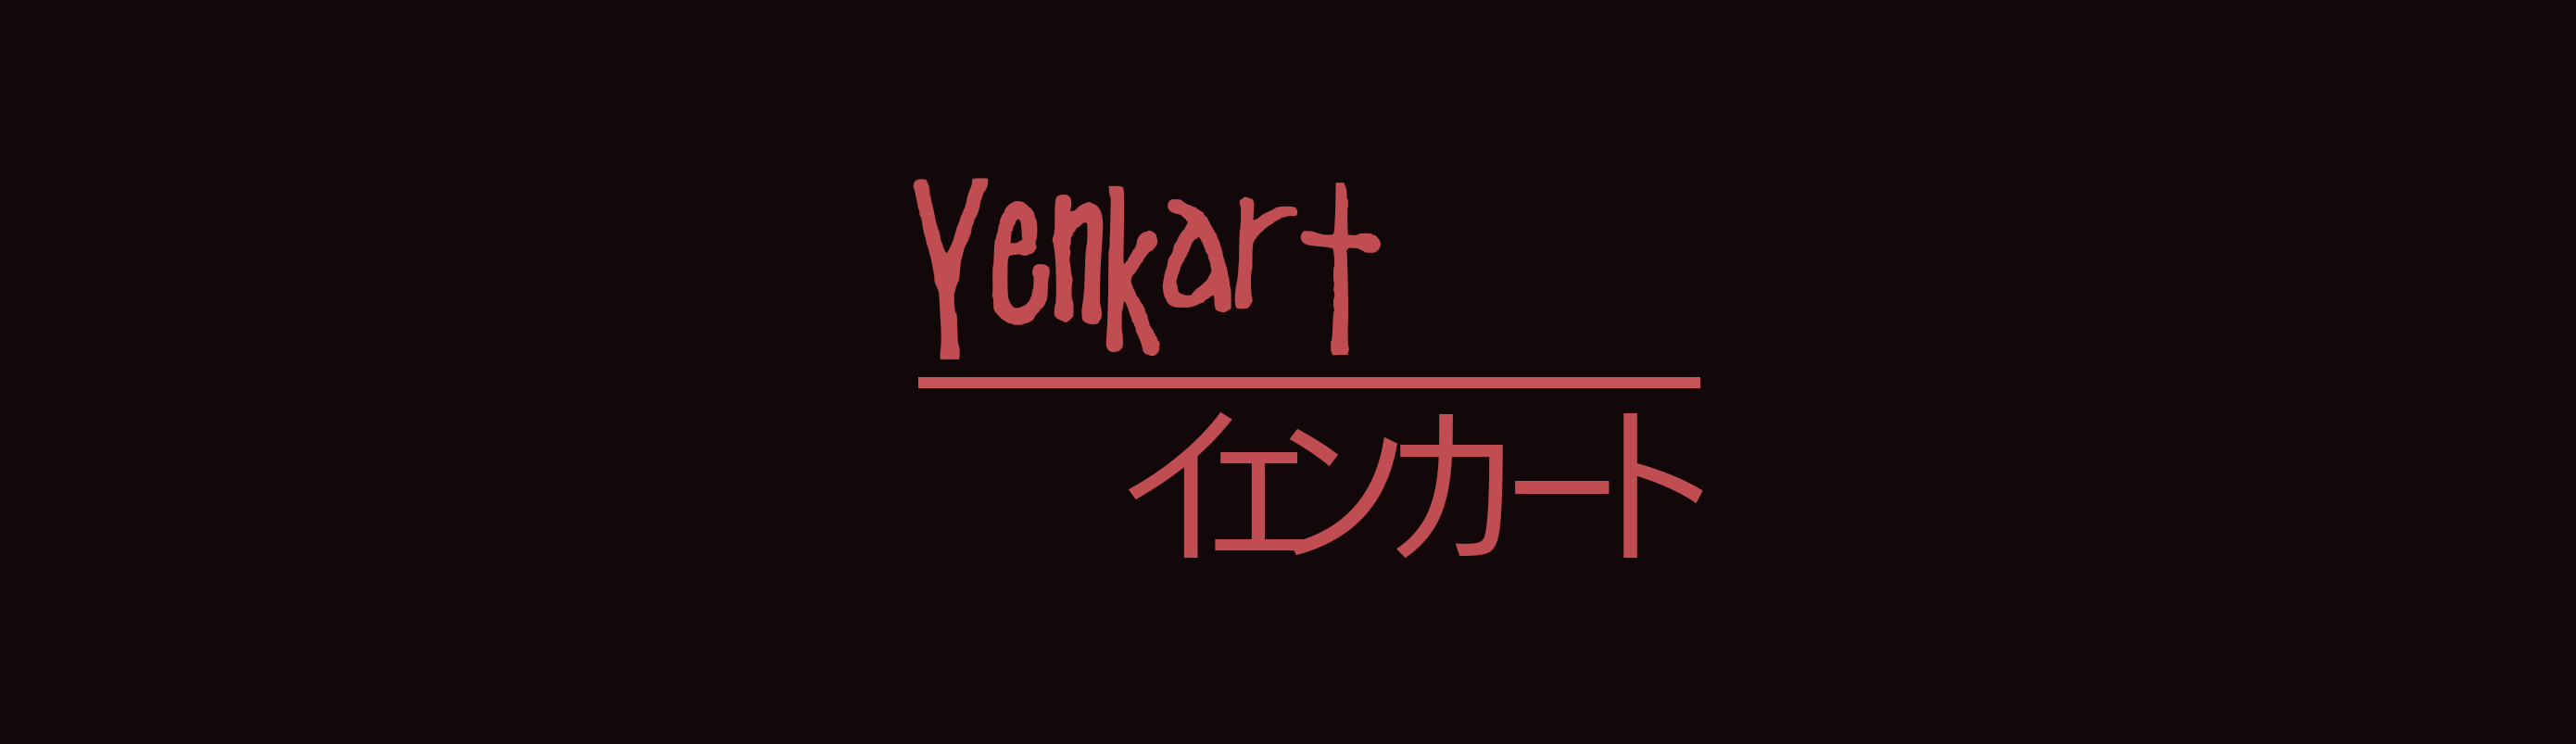 Yenkart: The Haunted School